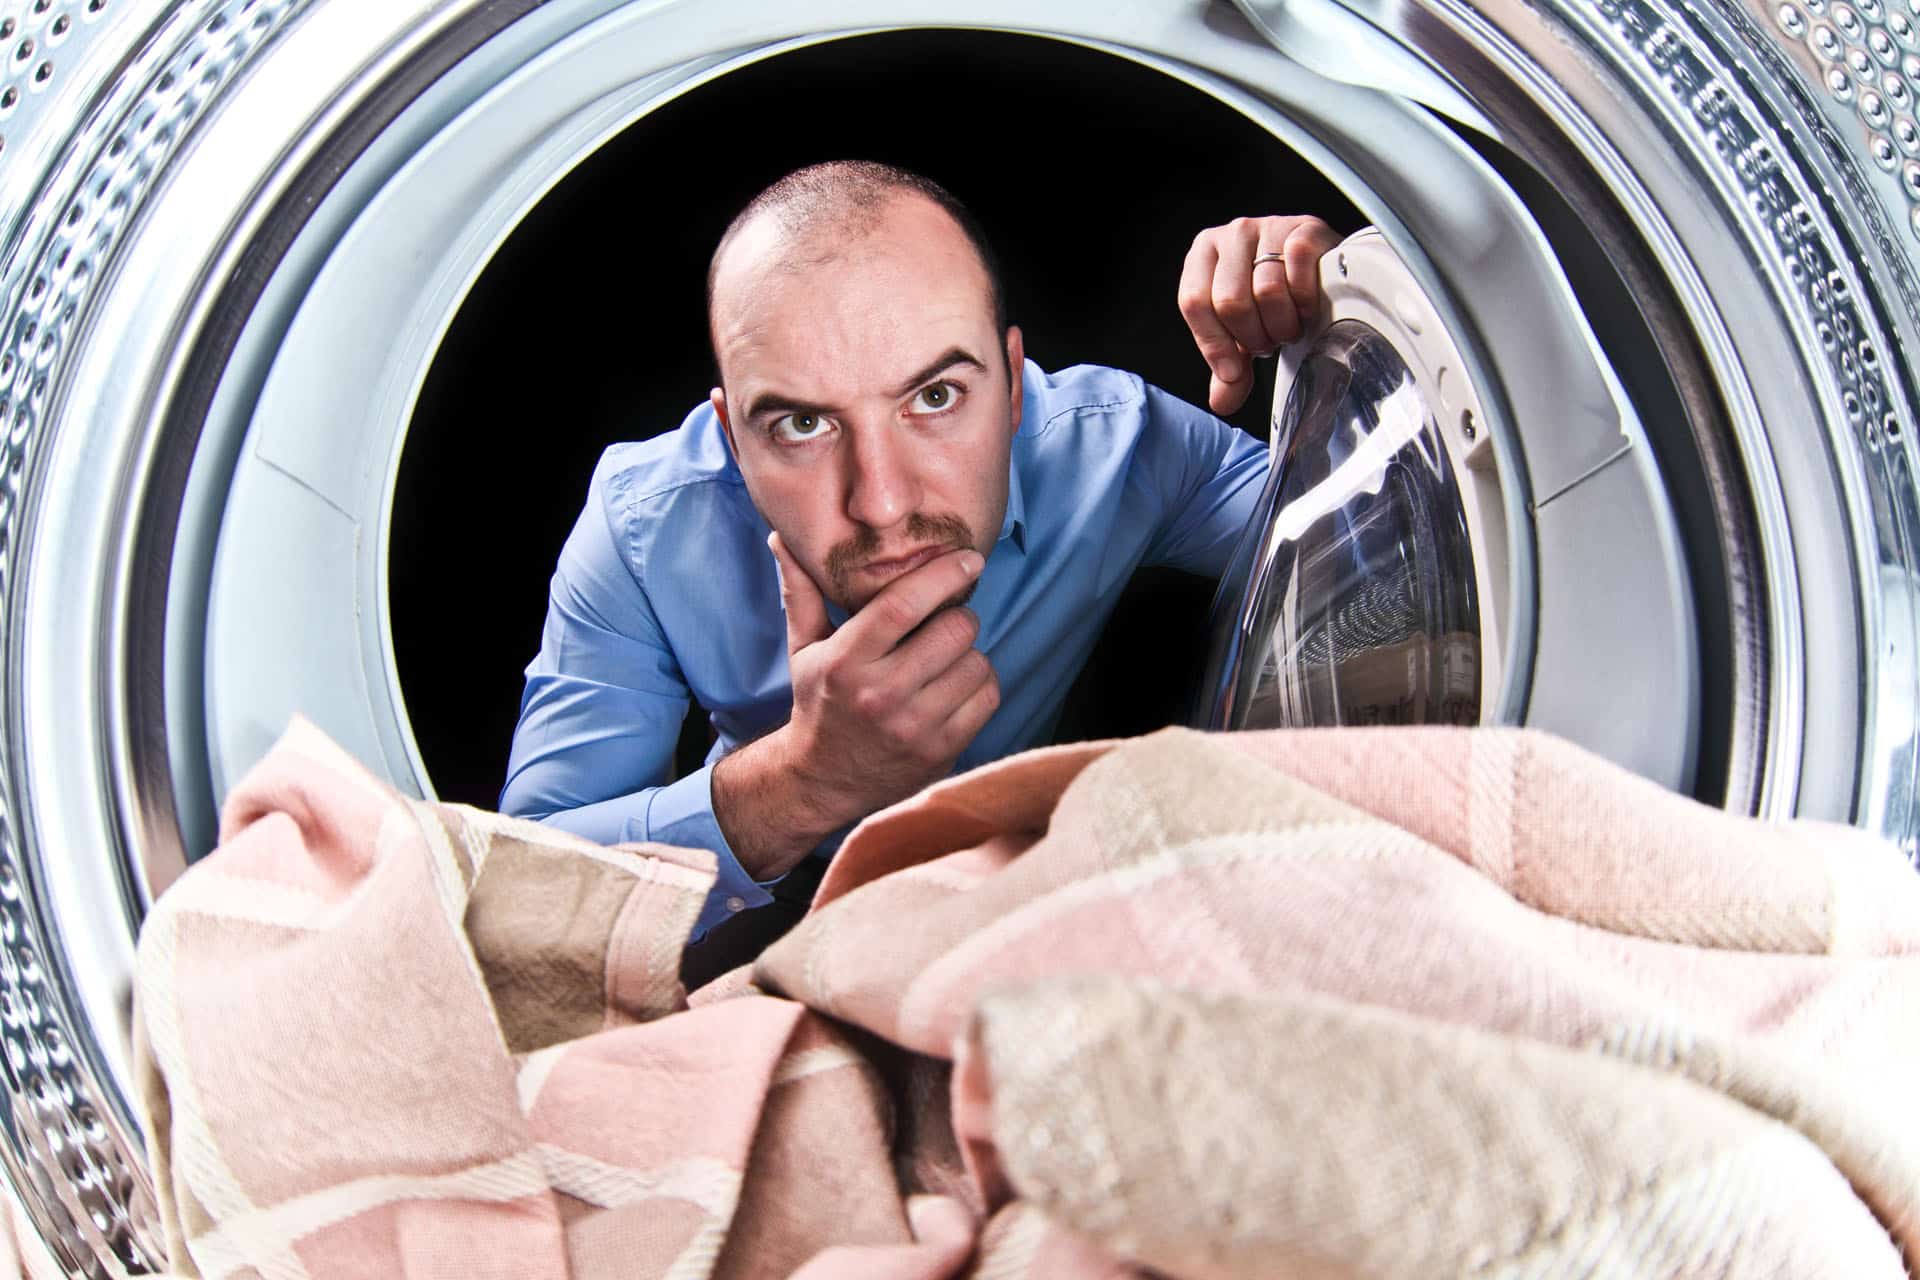 Comment tester la pompe de vidange de votre lave-linge ? 